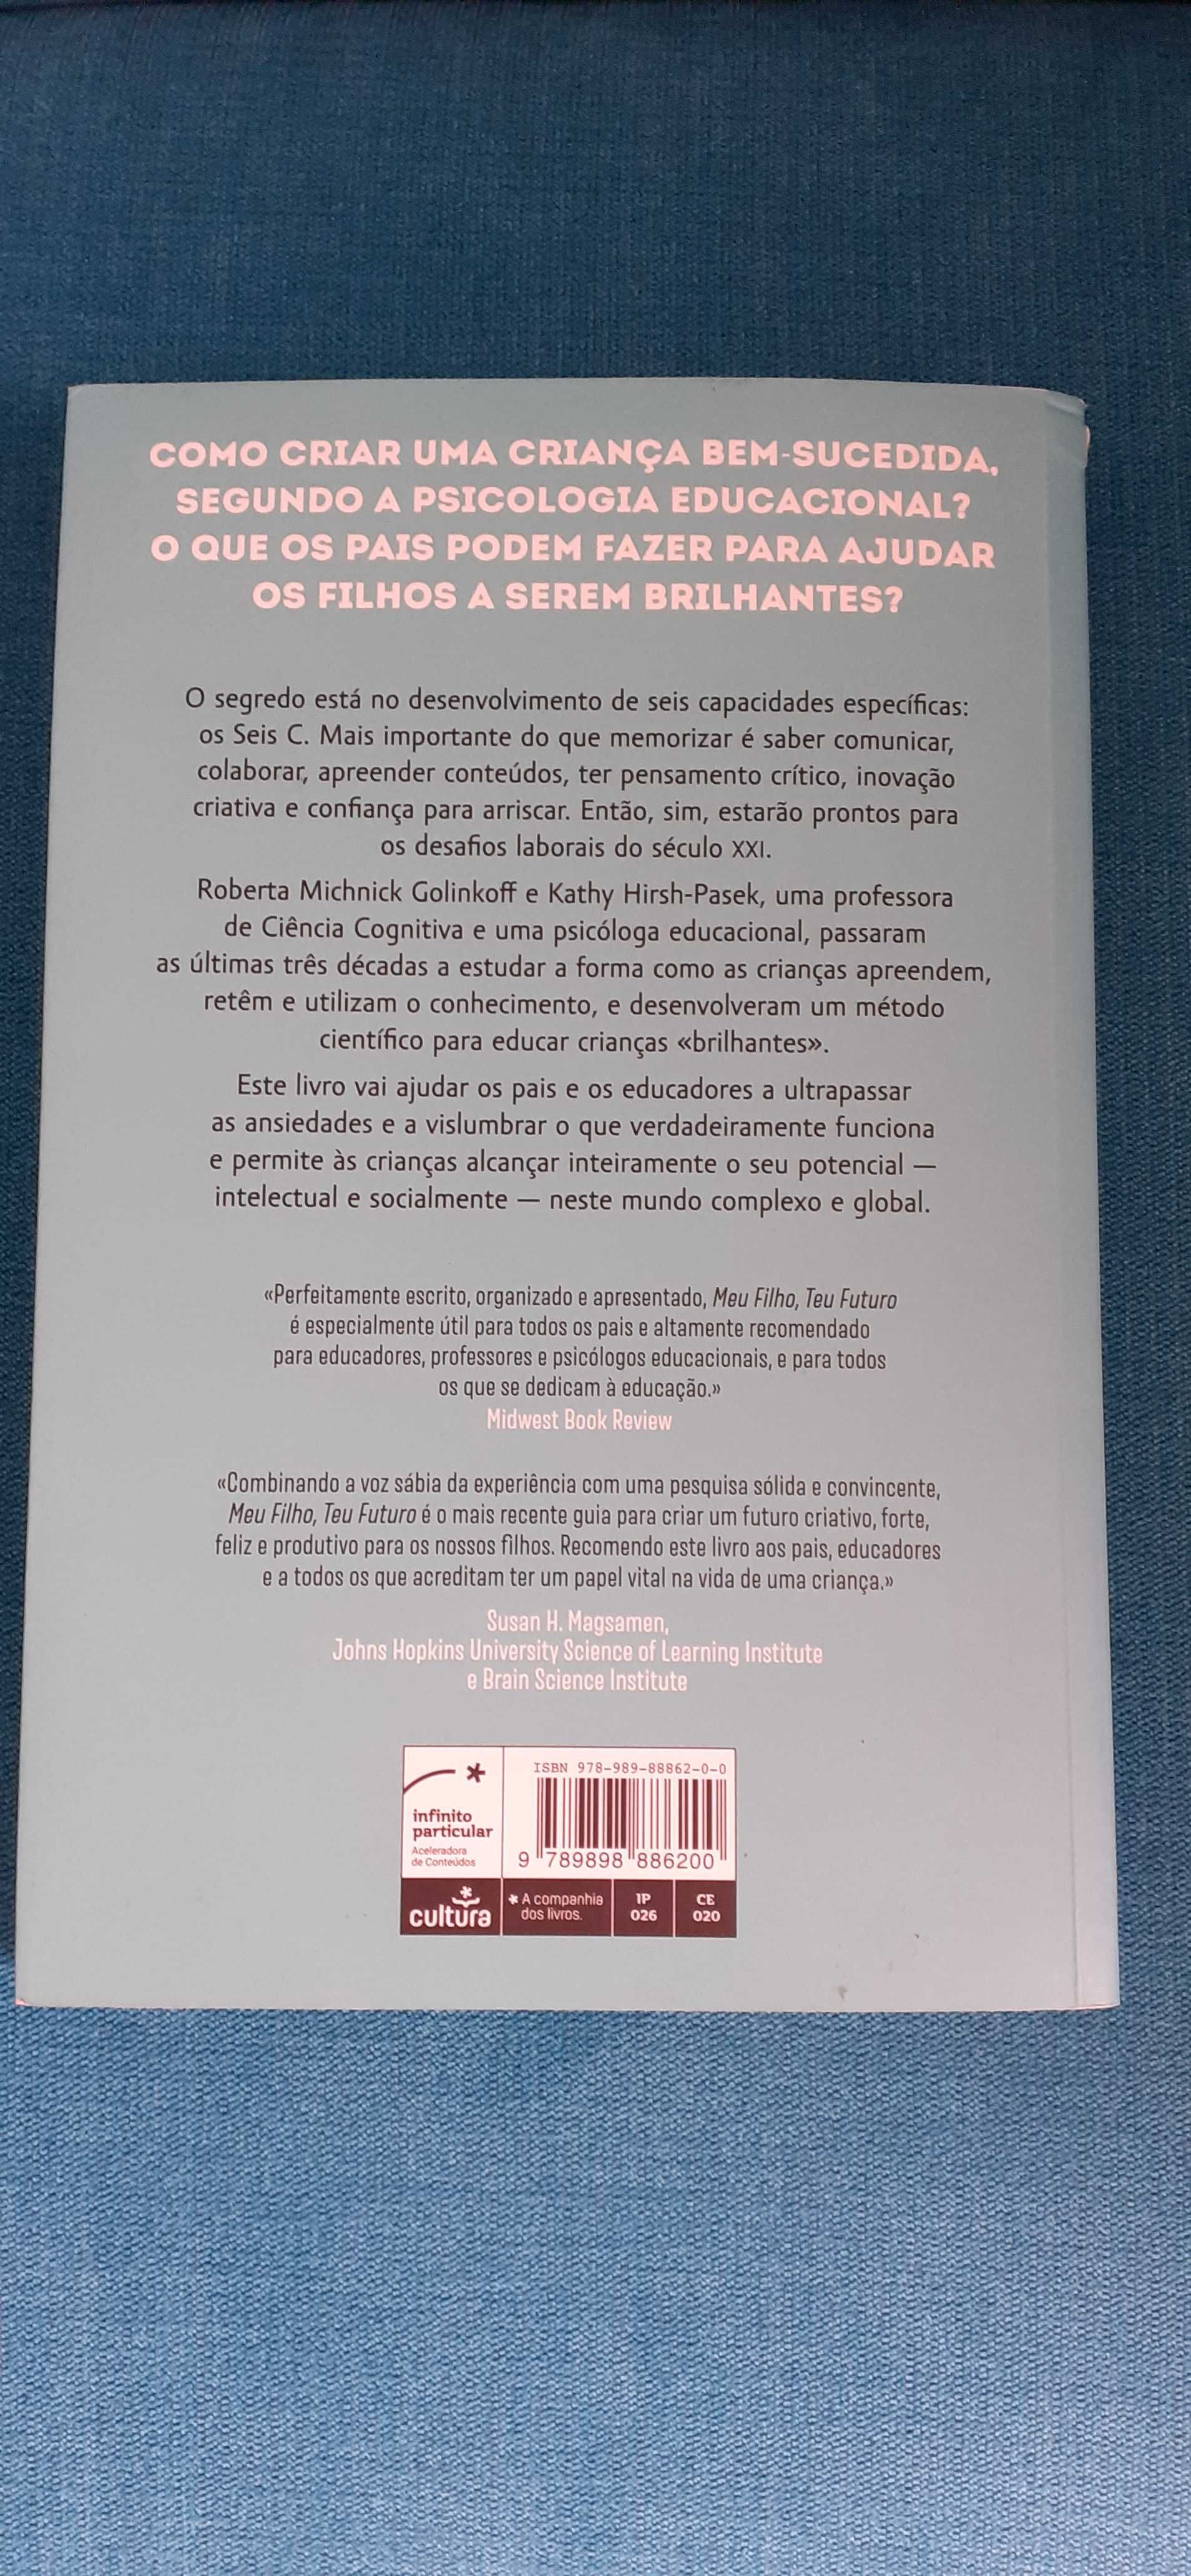 Bestseller "Meu Filho, Teu Futuro", R. Golinkoff e K. Pasek (NOVO)